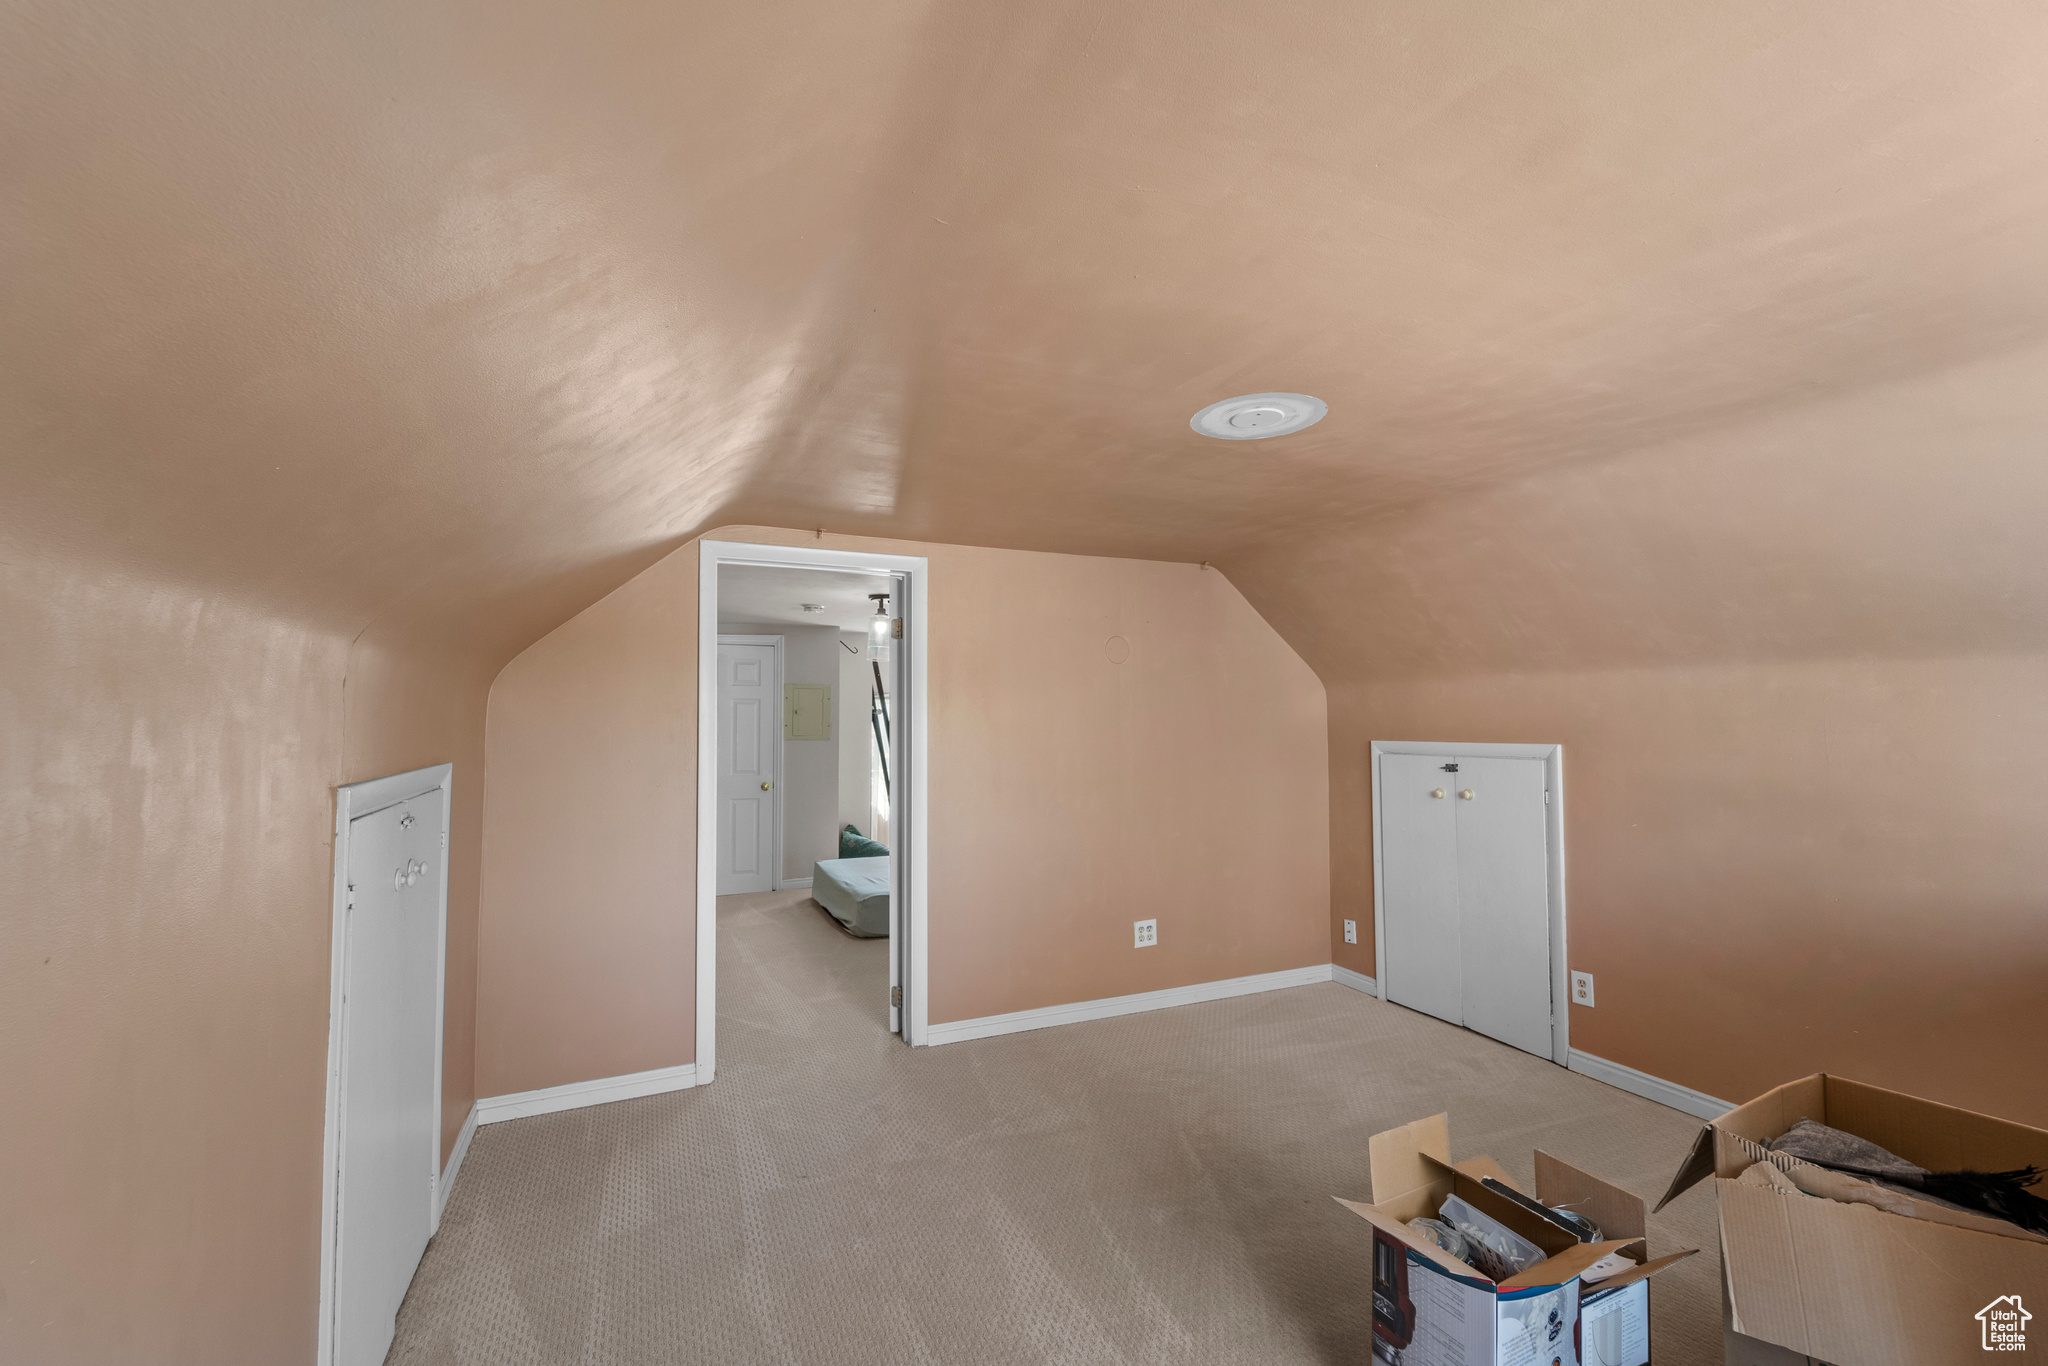 Bonus room with lofted ceiling and carpet floors